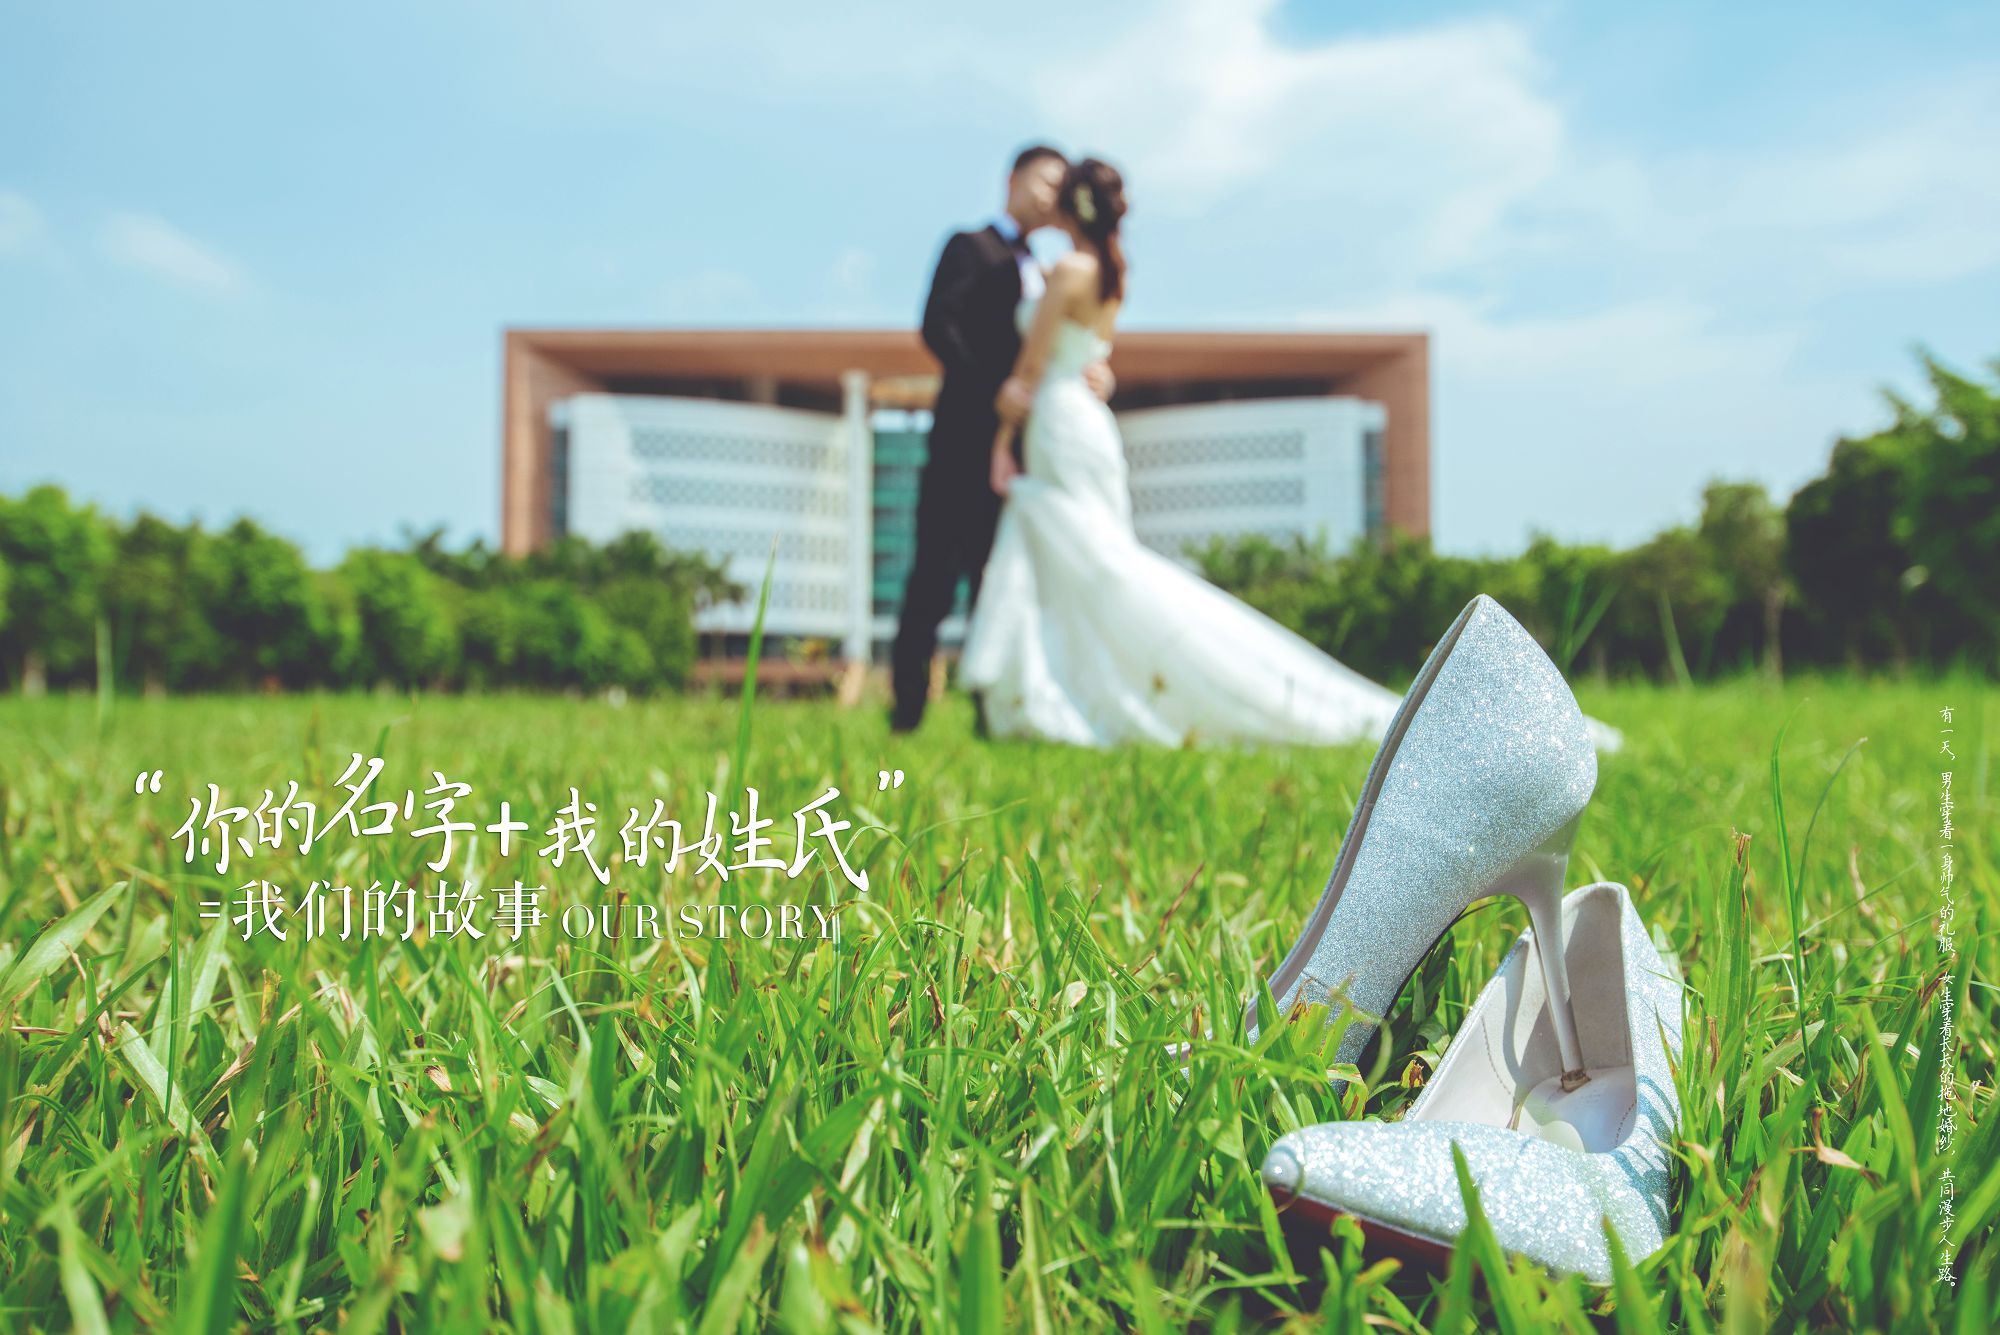 2018年11月广州婚纱照图片,云浮婚纱照,婚纱照图片